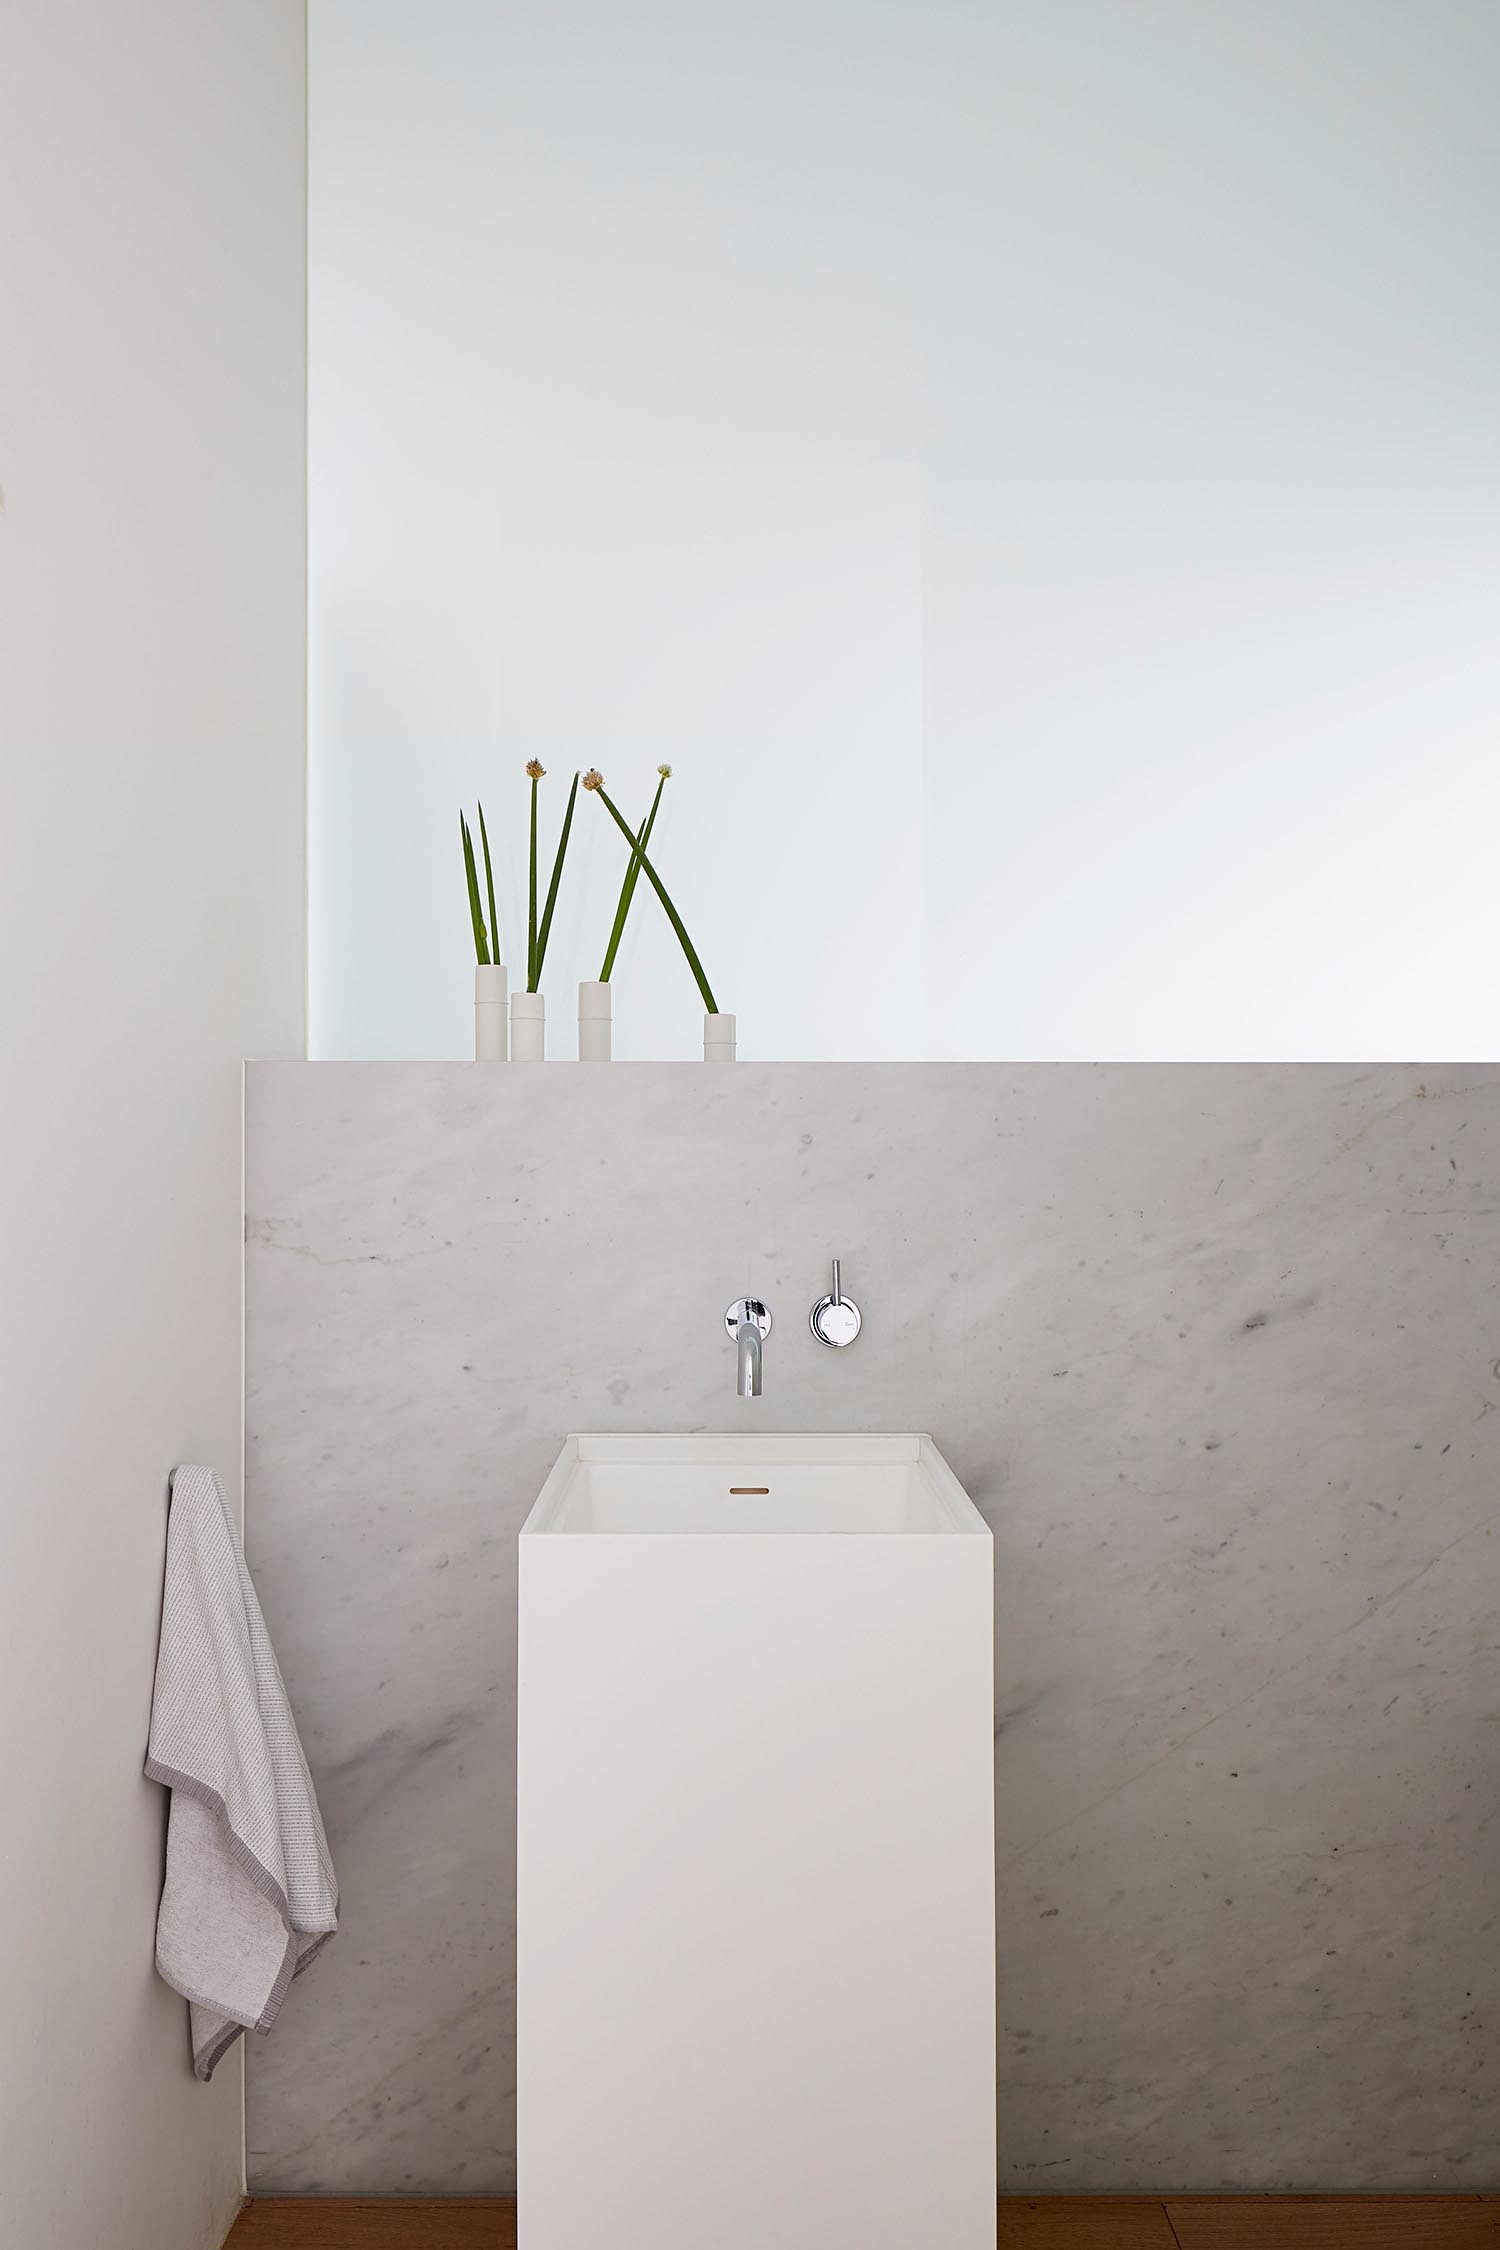 Современная ванная комната с нейтральной цветовой палитрой и современной белой раковиной на пьедестале.